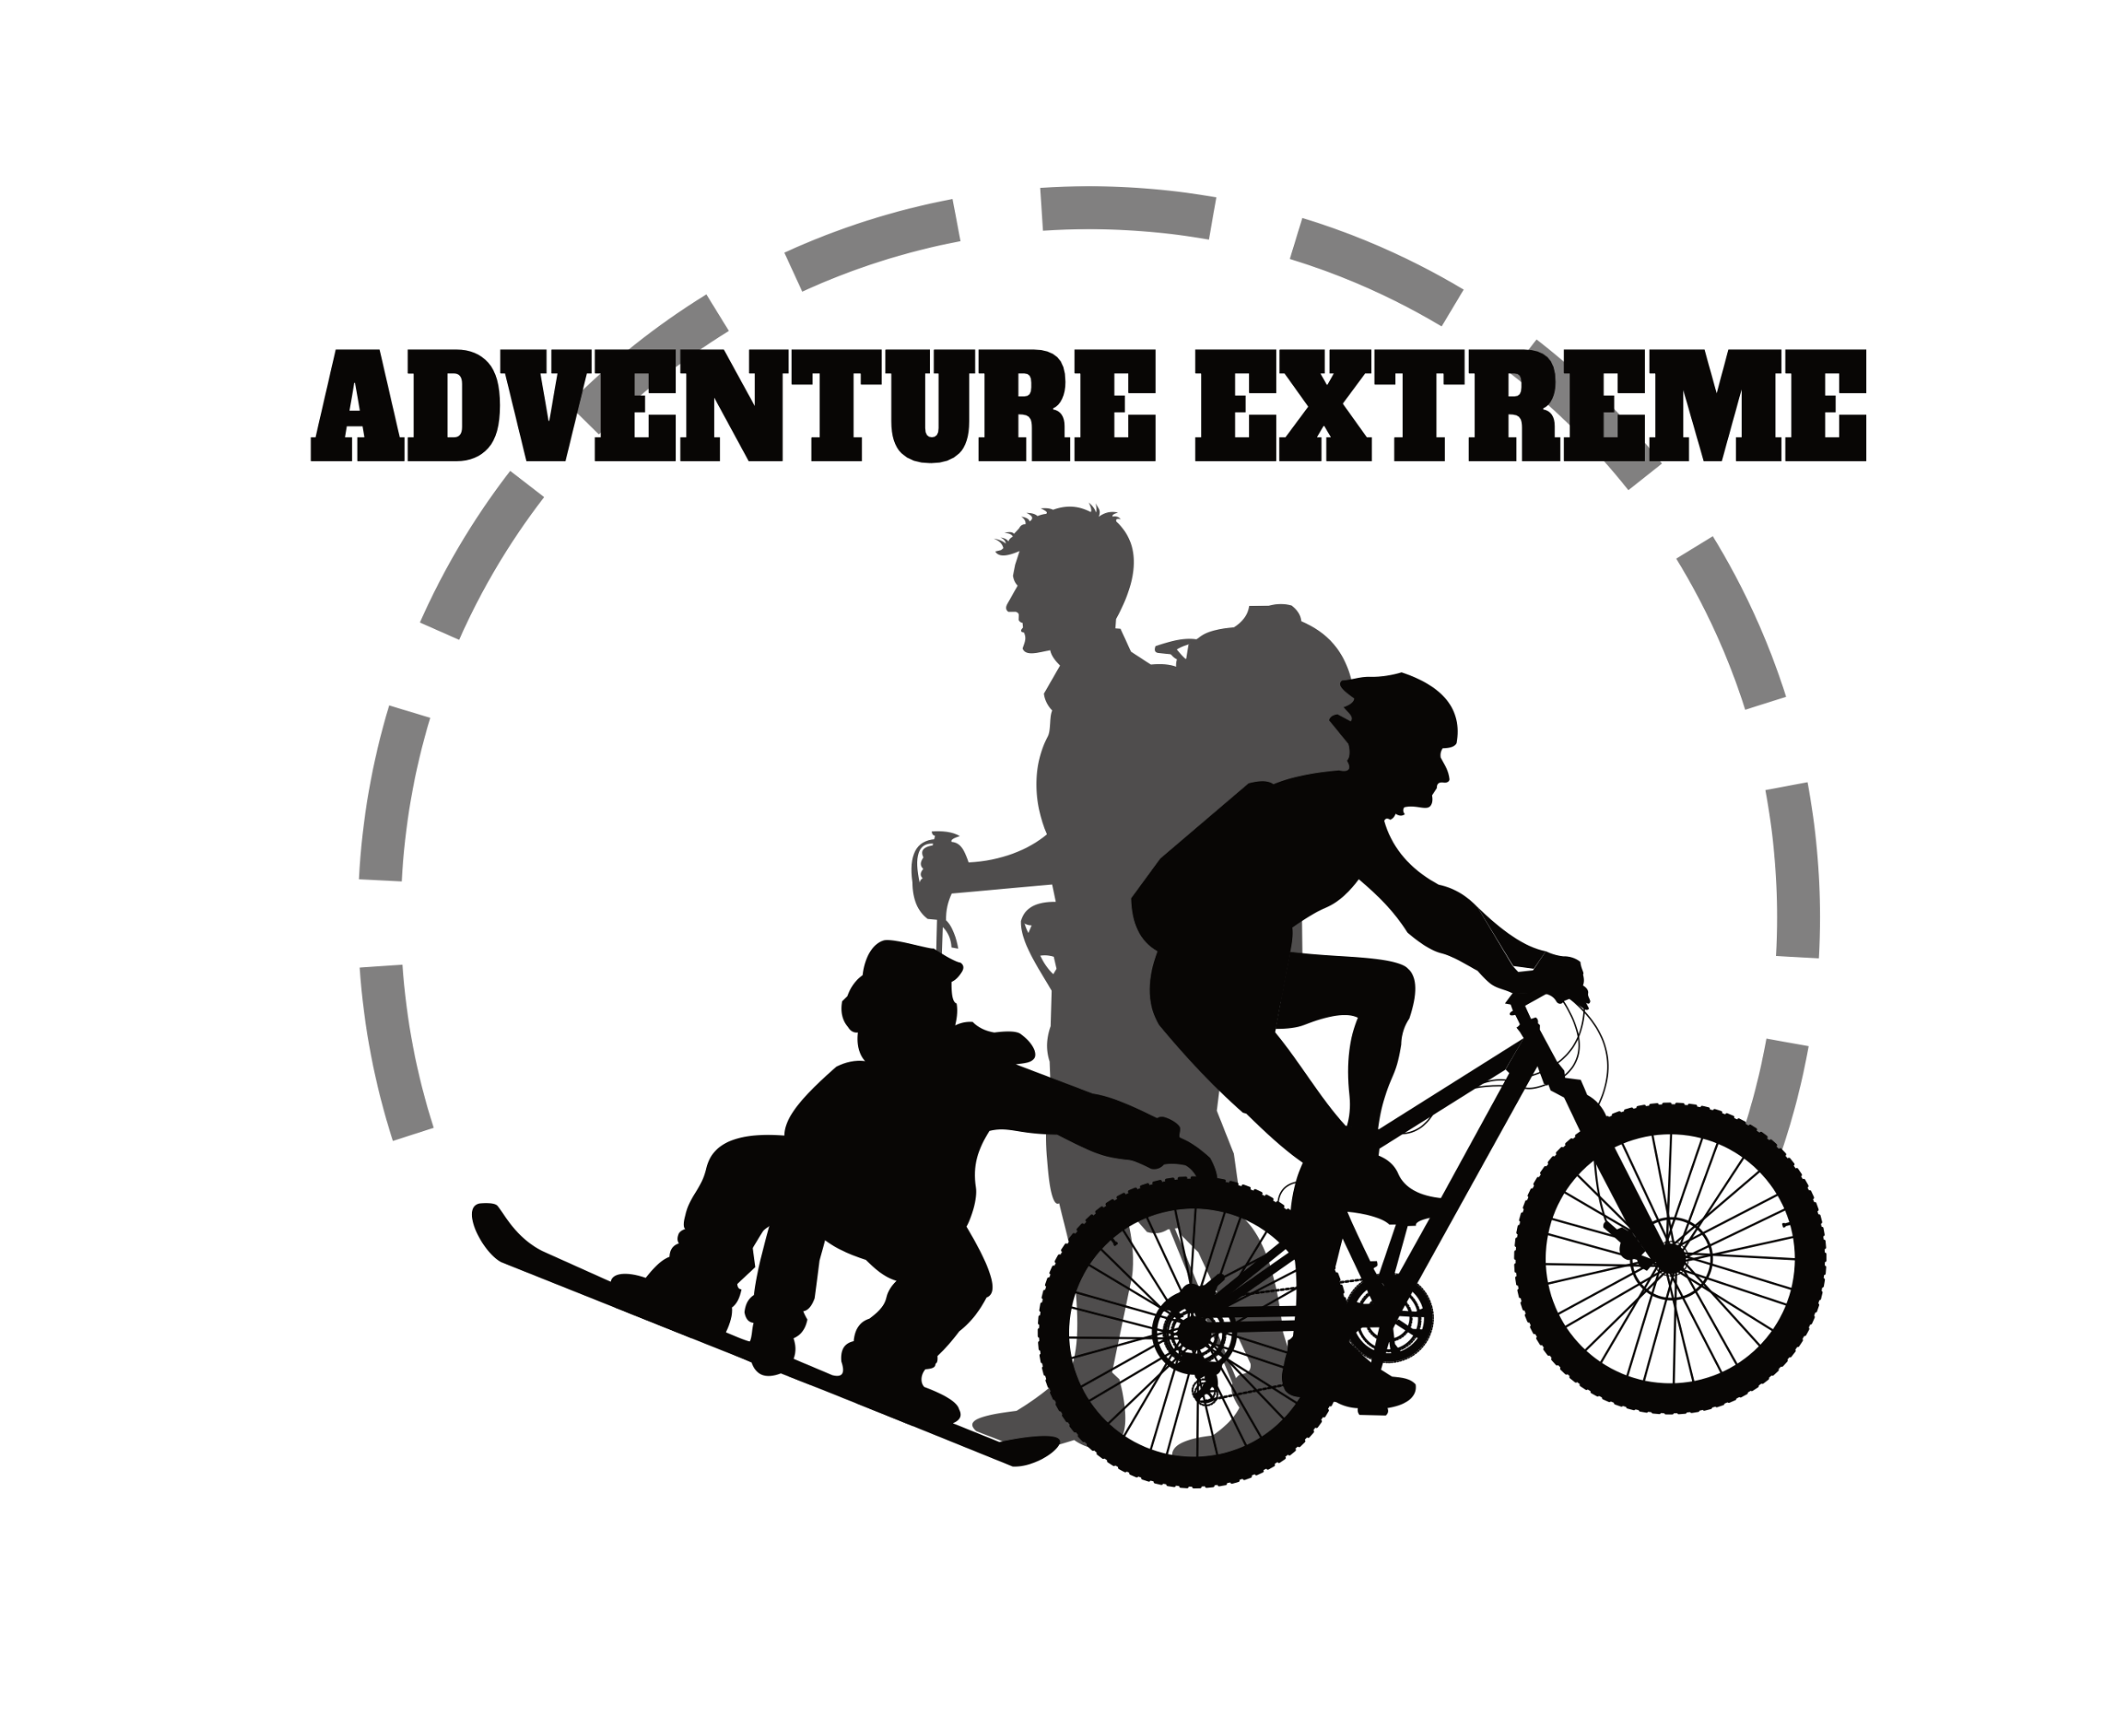   Adventure Extreme